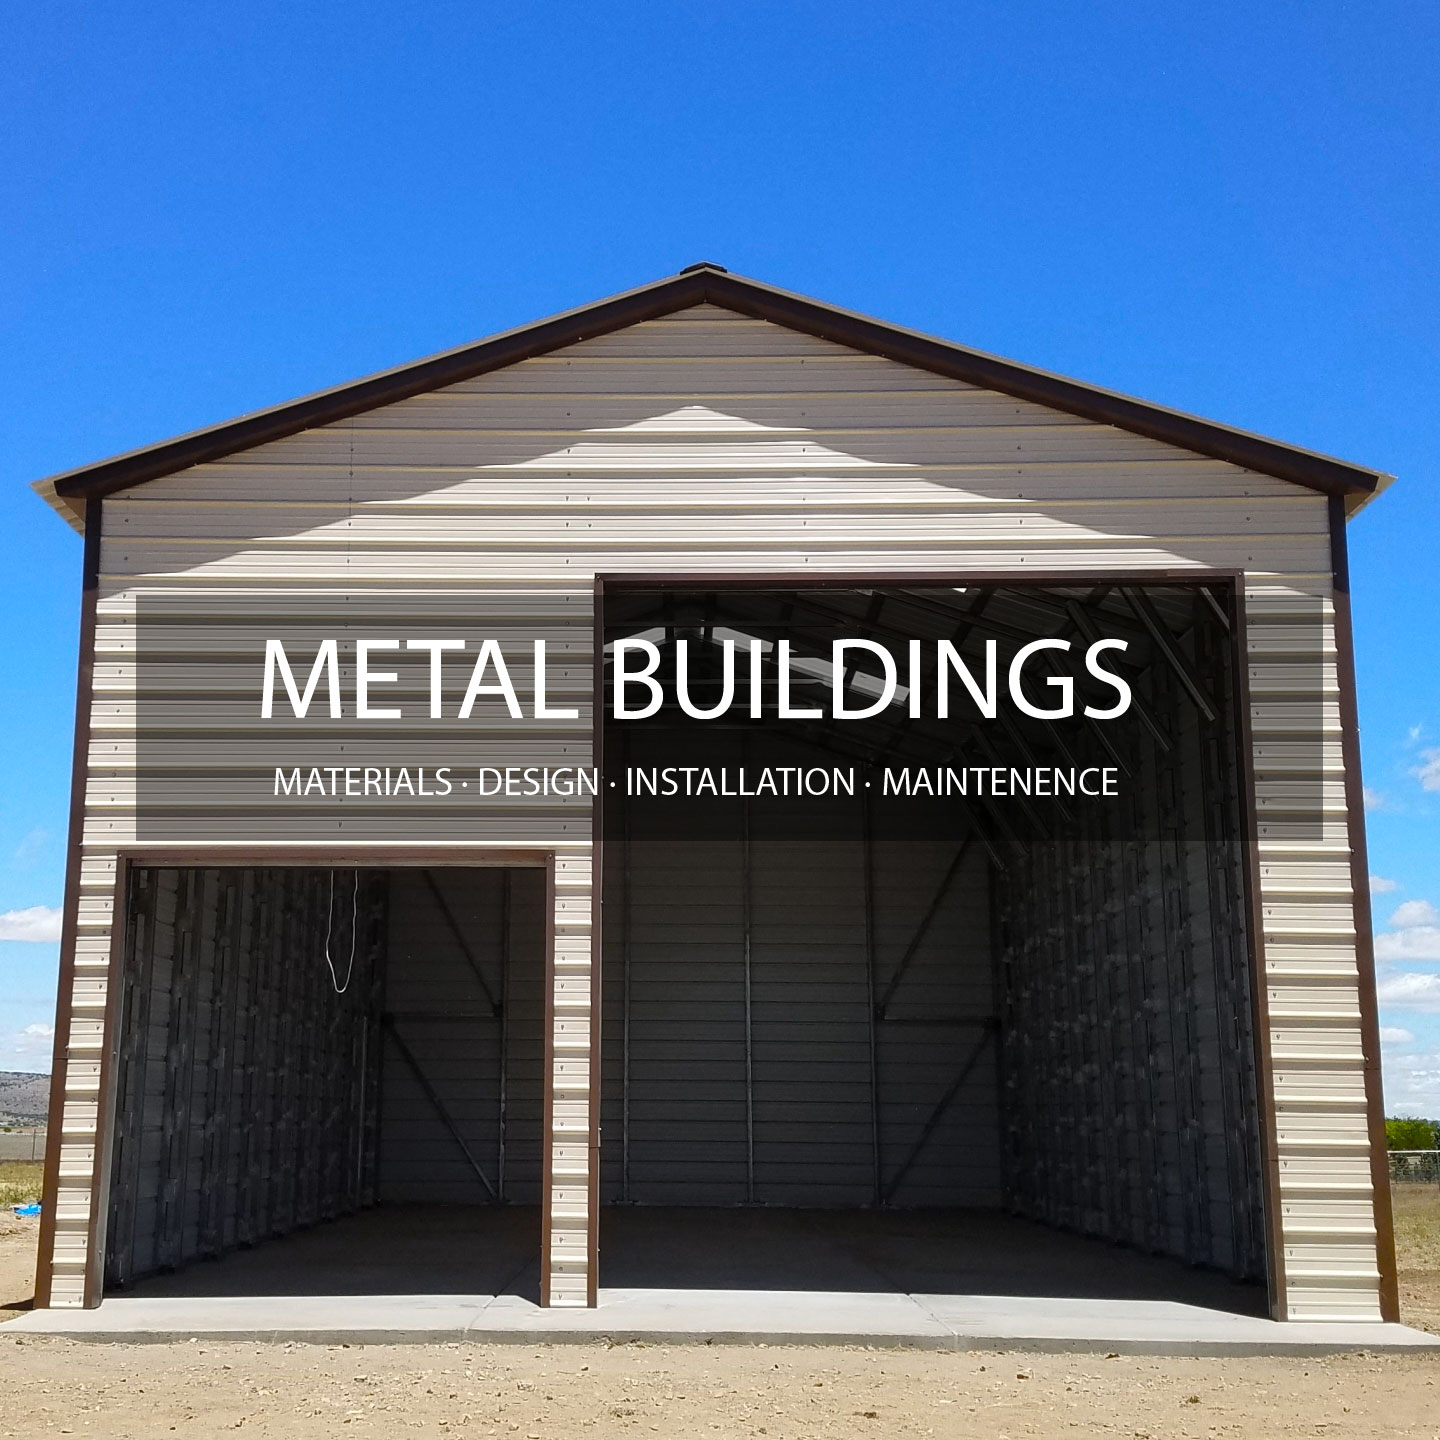 Lodi Metal Buildings Network